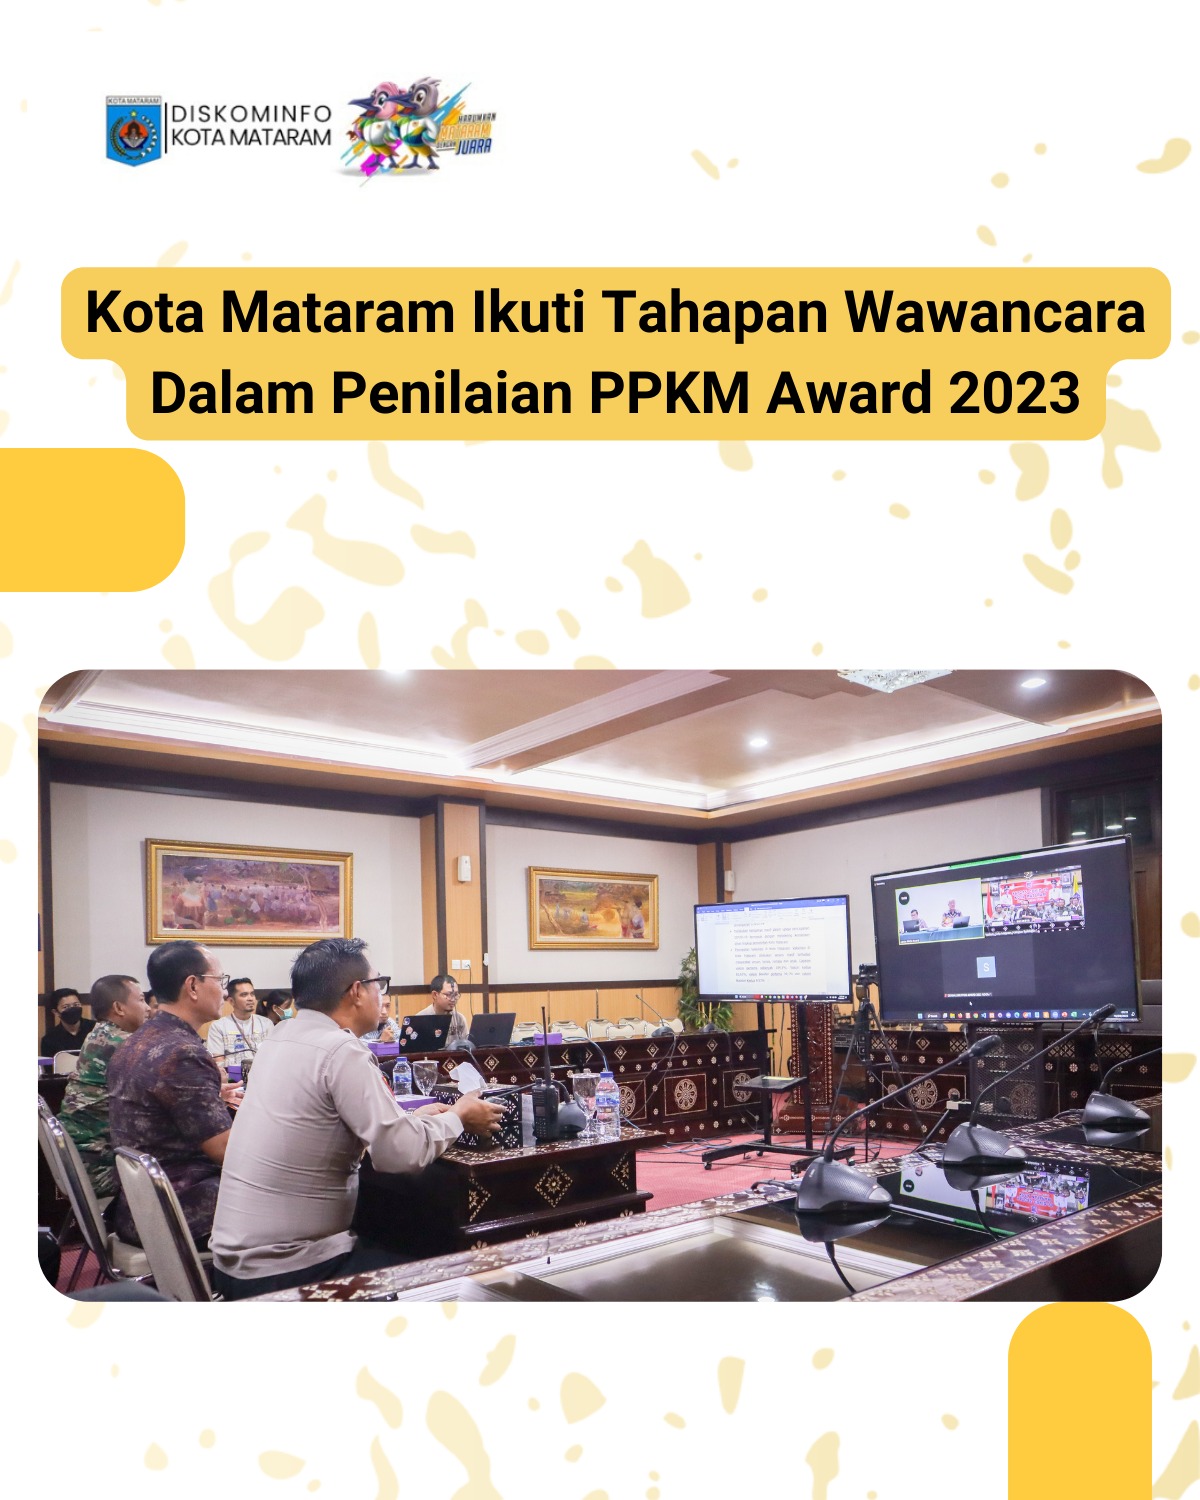 Kota Mataram Ikuti Tahapan Wawancara Dalam Penilaian PPKM Award 2023